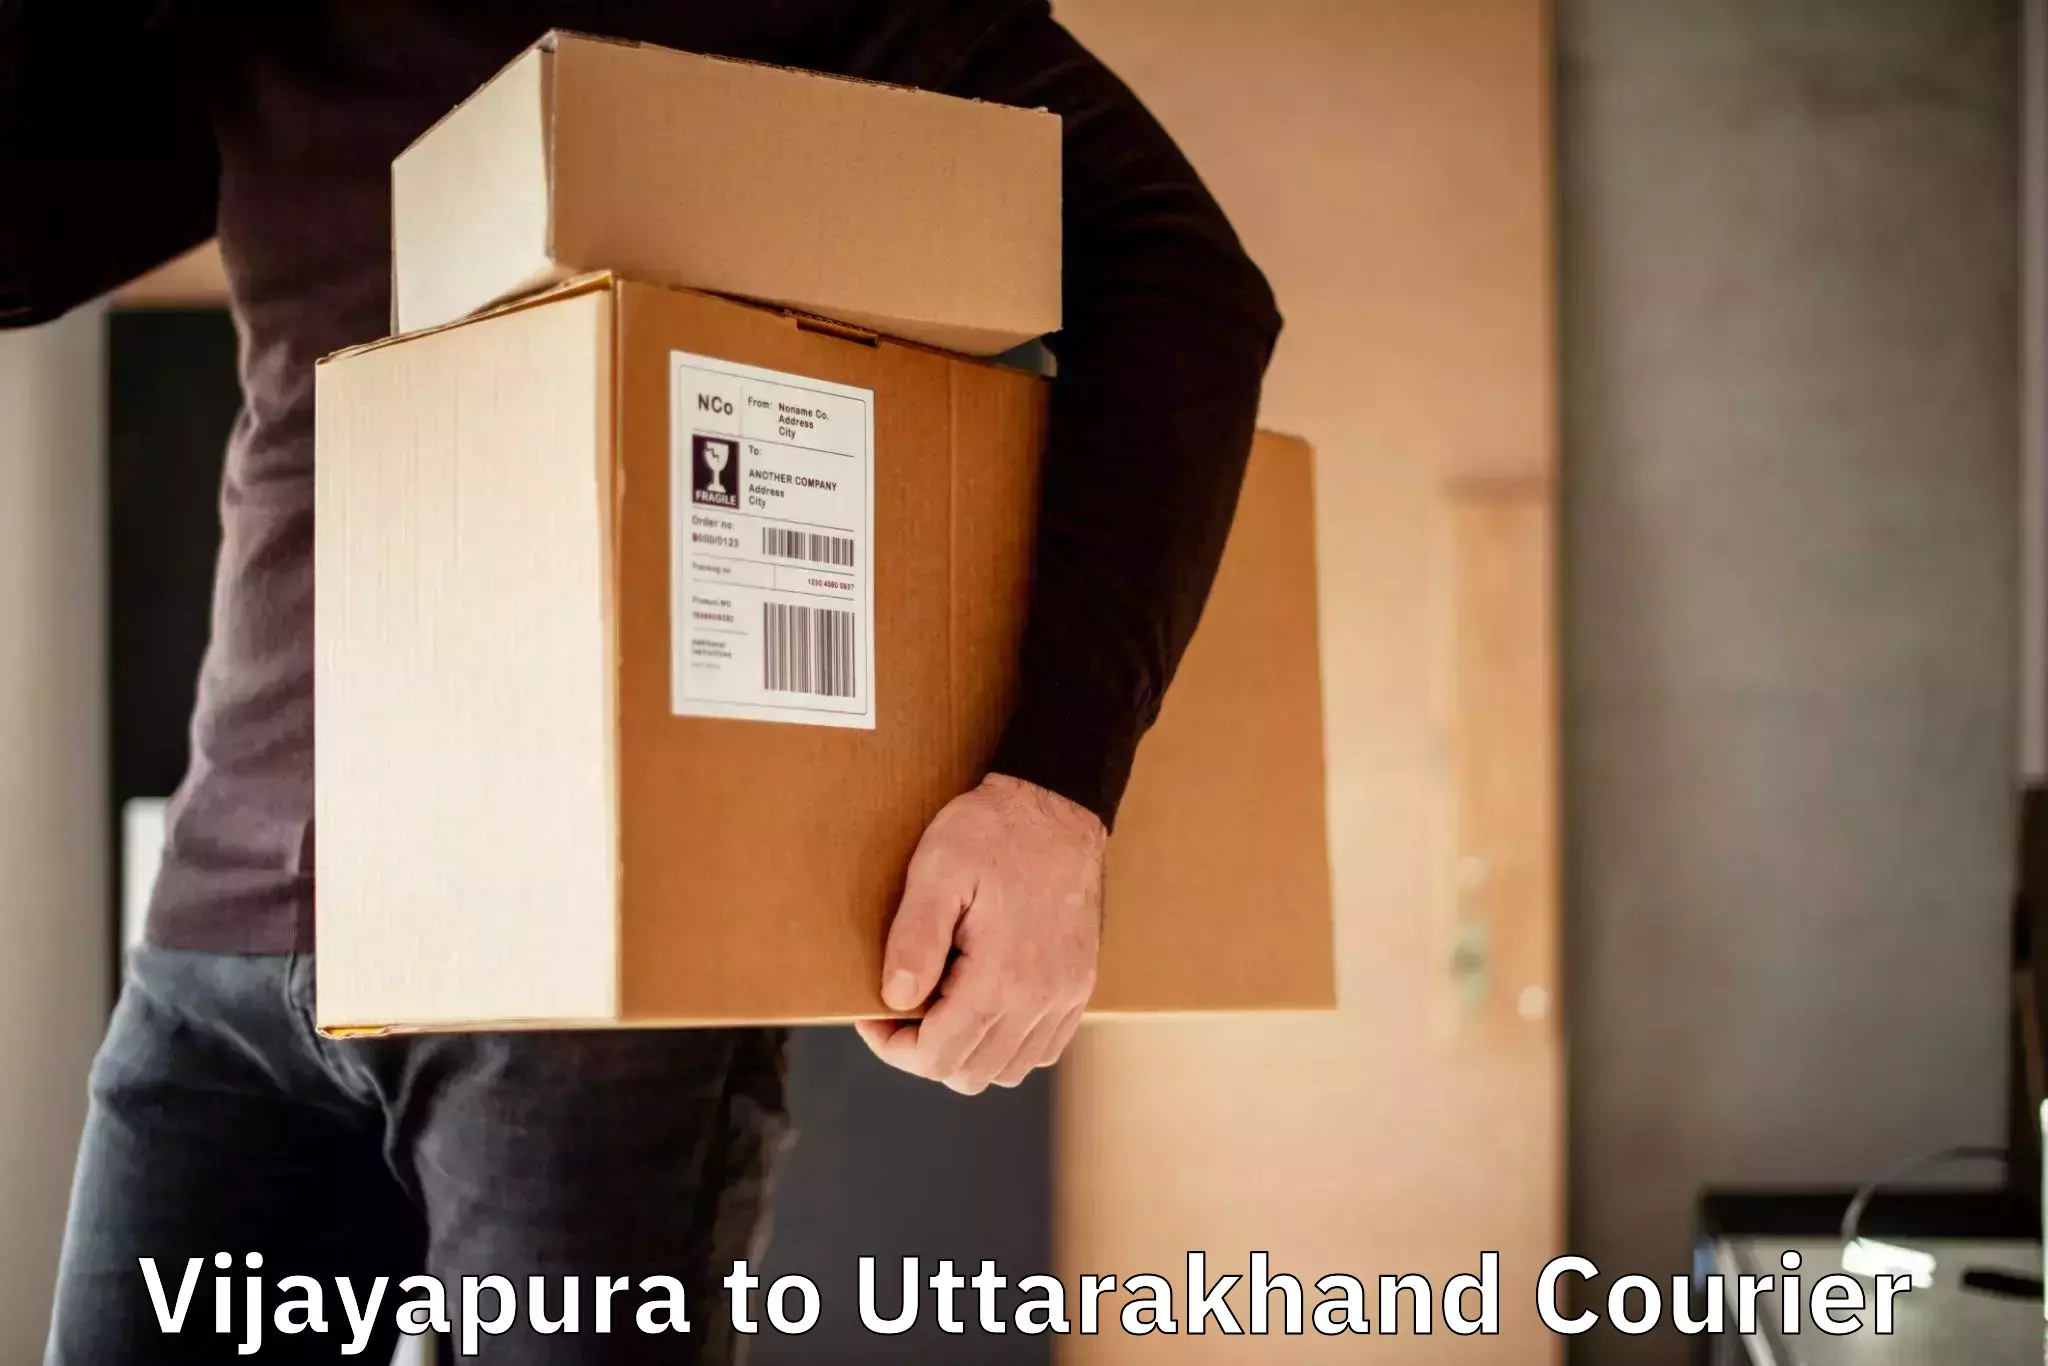 Express delivery capabilities Vijayapura to Uttarakhand